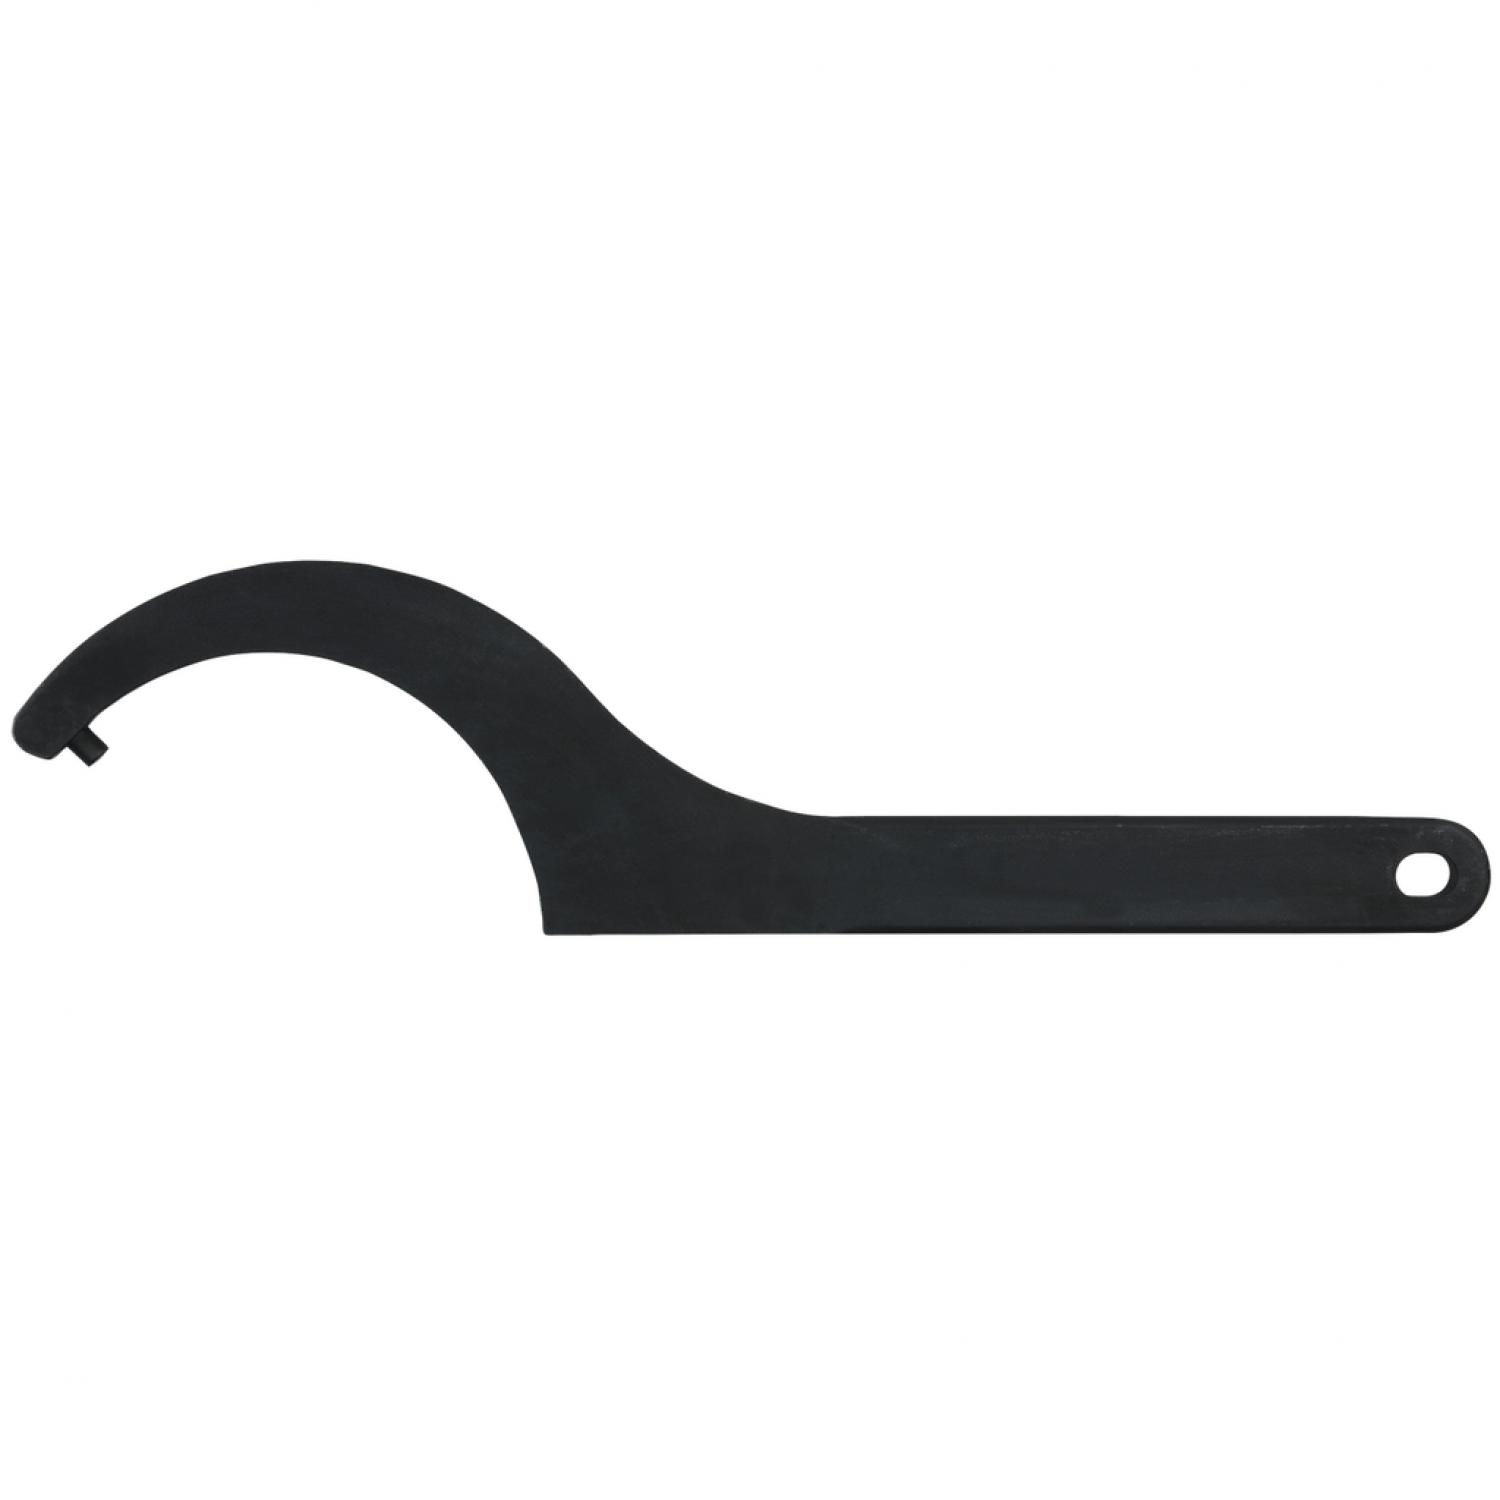 Прочный крючковый ключ с цапфами, 25-28 мм